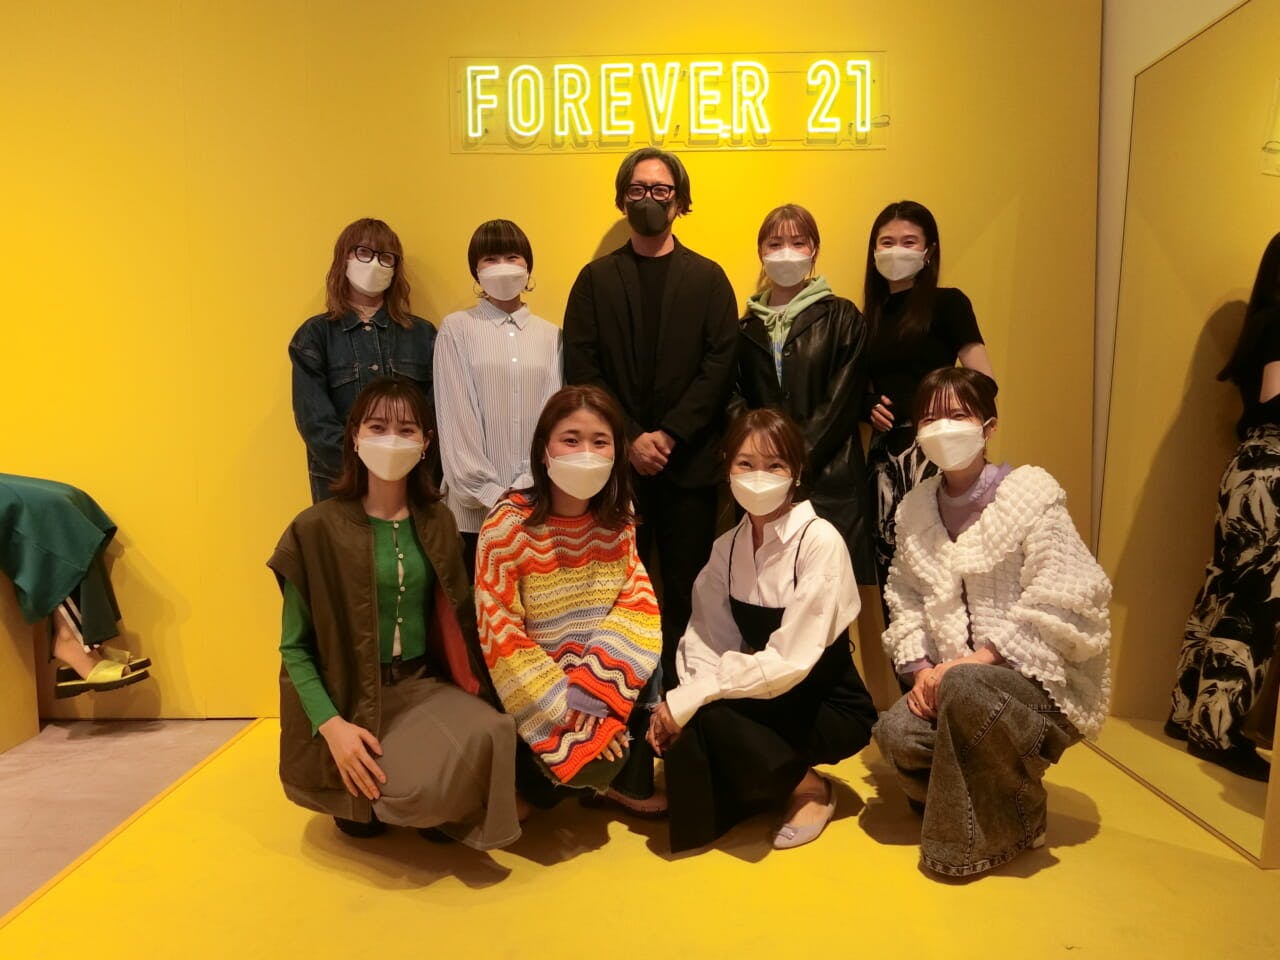 後列中央がアダストリアの野田源太郎クリエイティブディレクター。女性たちが着用しているのは全て「フォーエバー21」の日本企画商品